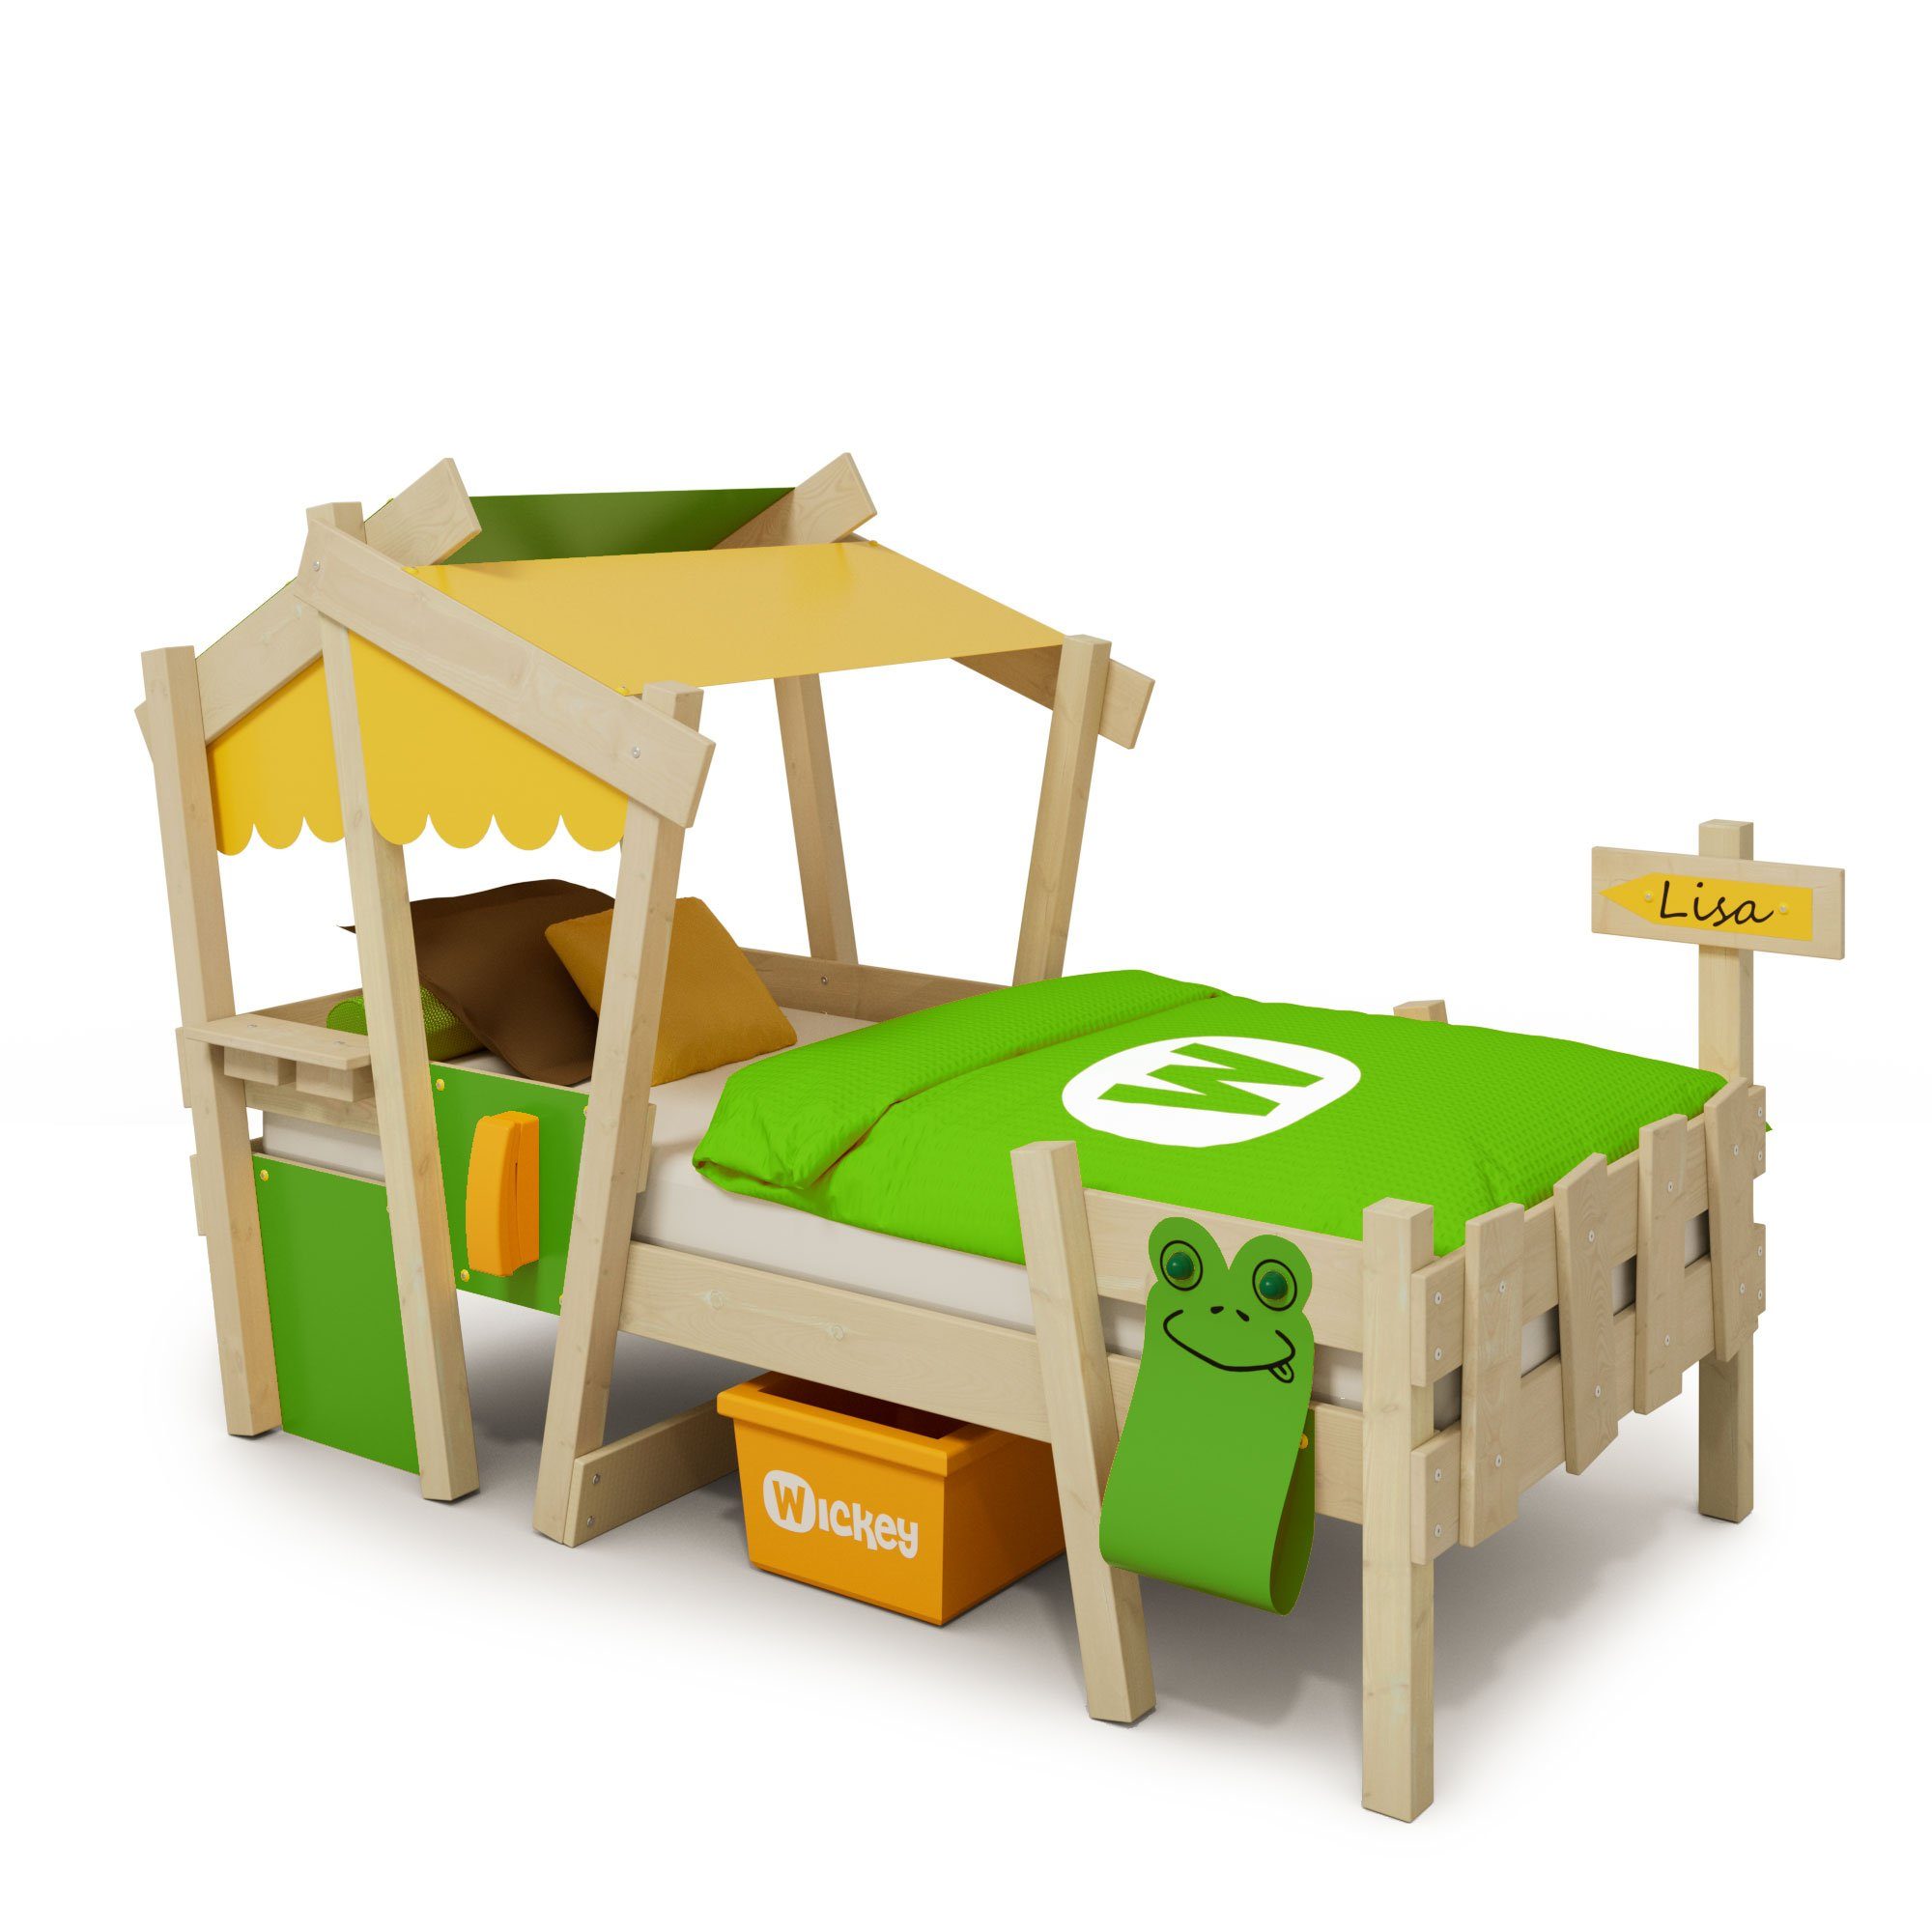 Wickey Kinderbett Crazy Candy - Holzbett, Spielbett 90 x 200 cm (Holzpaket aus Pfosten und Brettern, Spielbett für Kinder), Massivholzbett Gelb/Apfelgrün